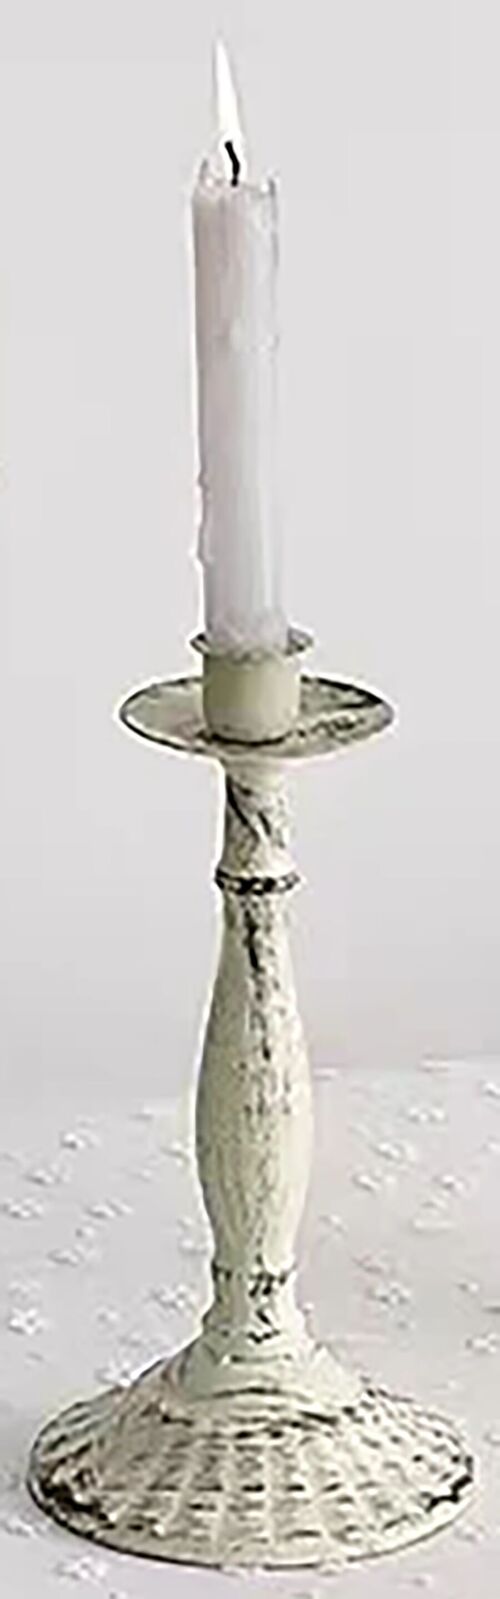 Metal retro single decorative candlestick in white color. SD-179